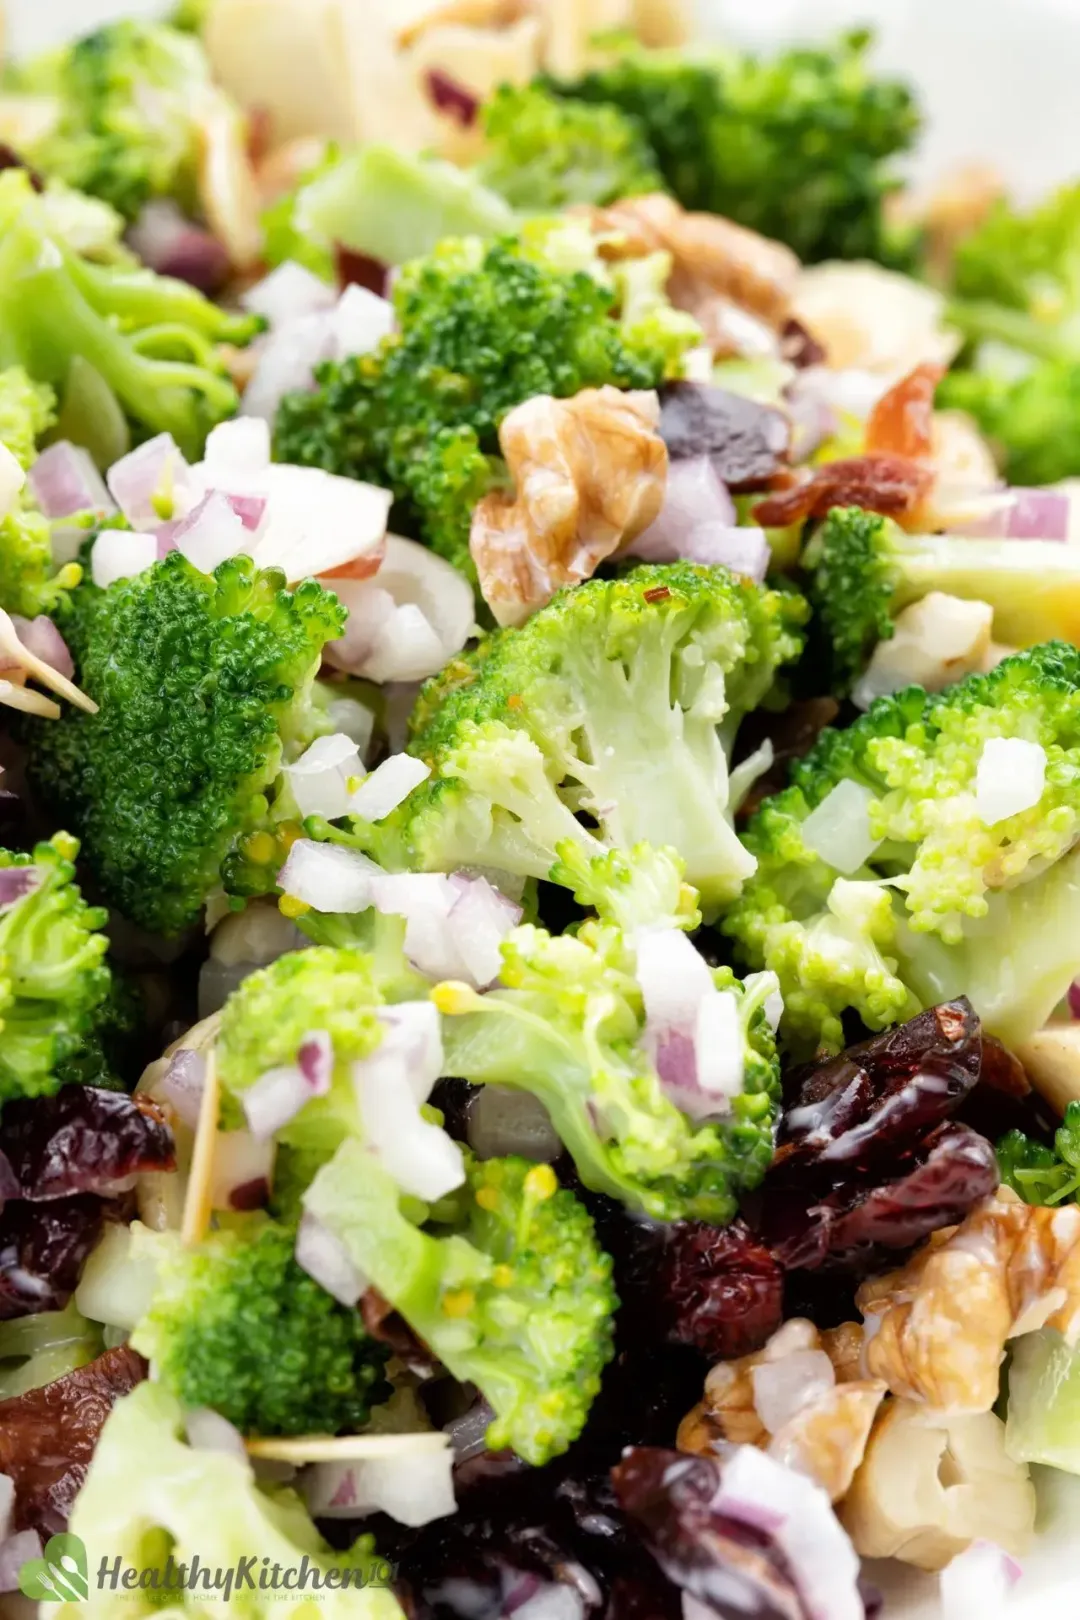 How to make homemade Healthy Broccoli Salad